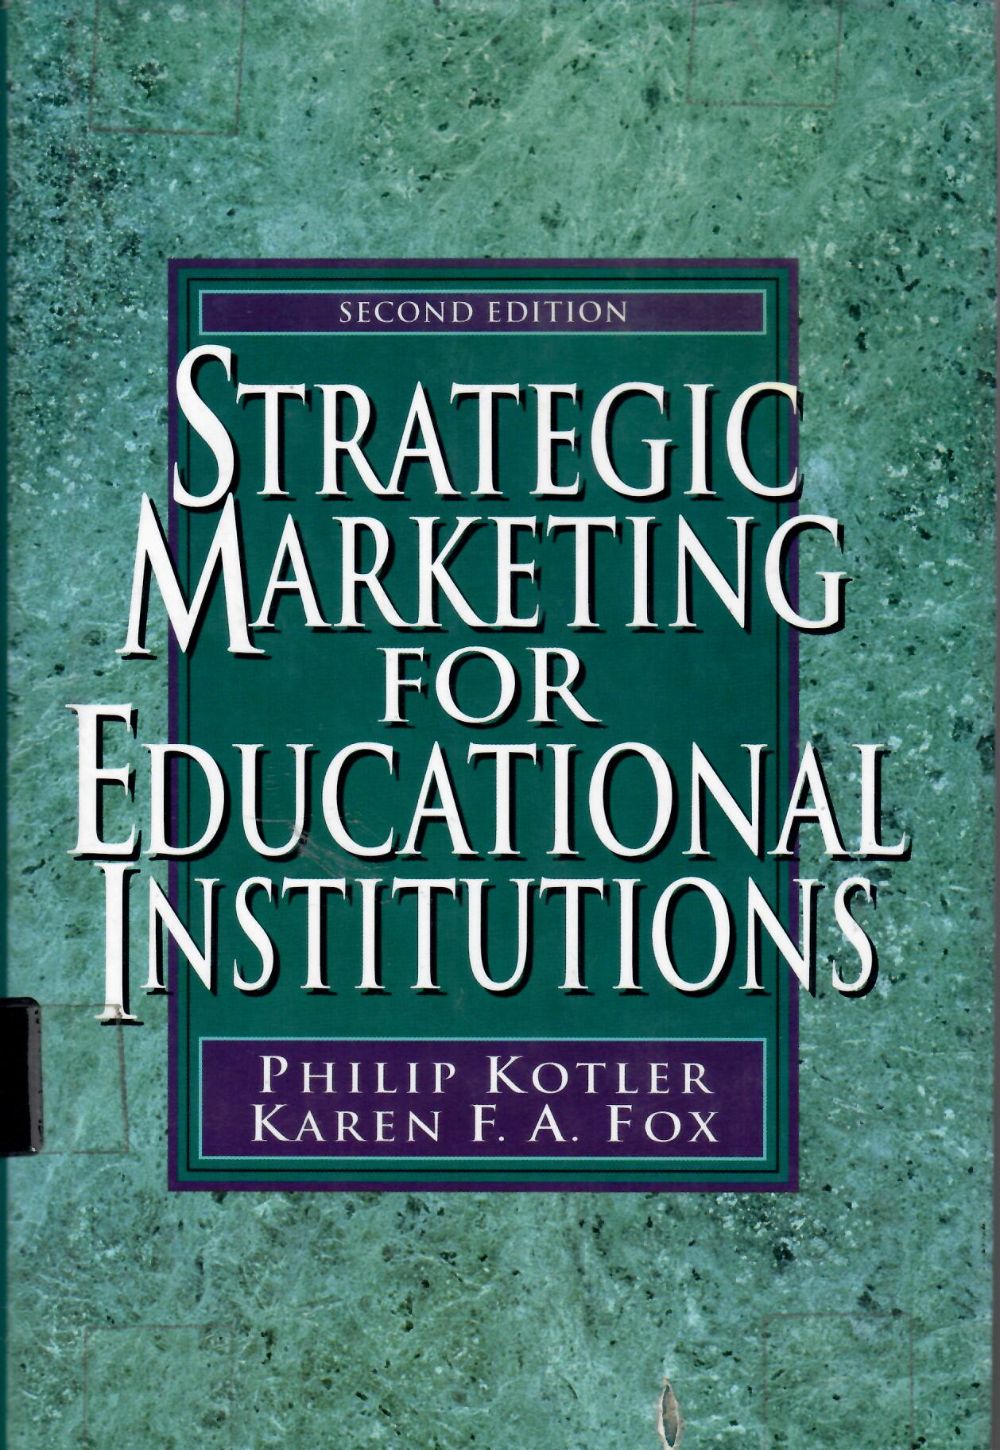 Strategic marketing for educational institutions/ Philip Kotler, Karen F.A. Fox